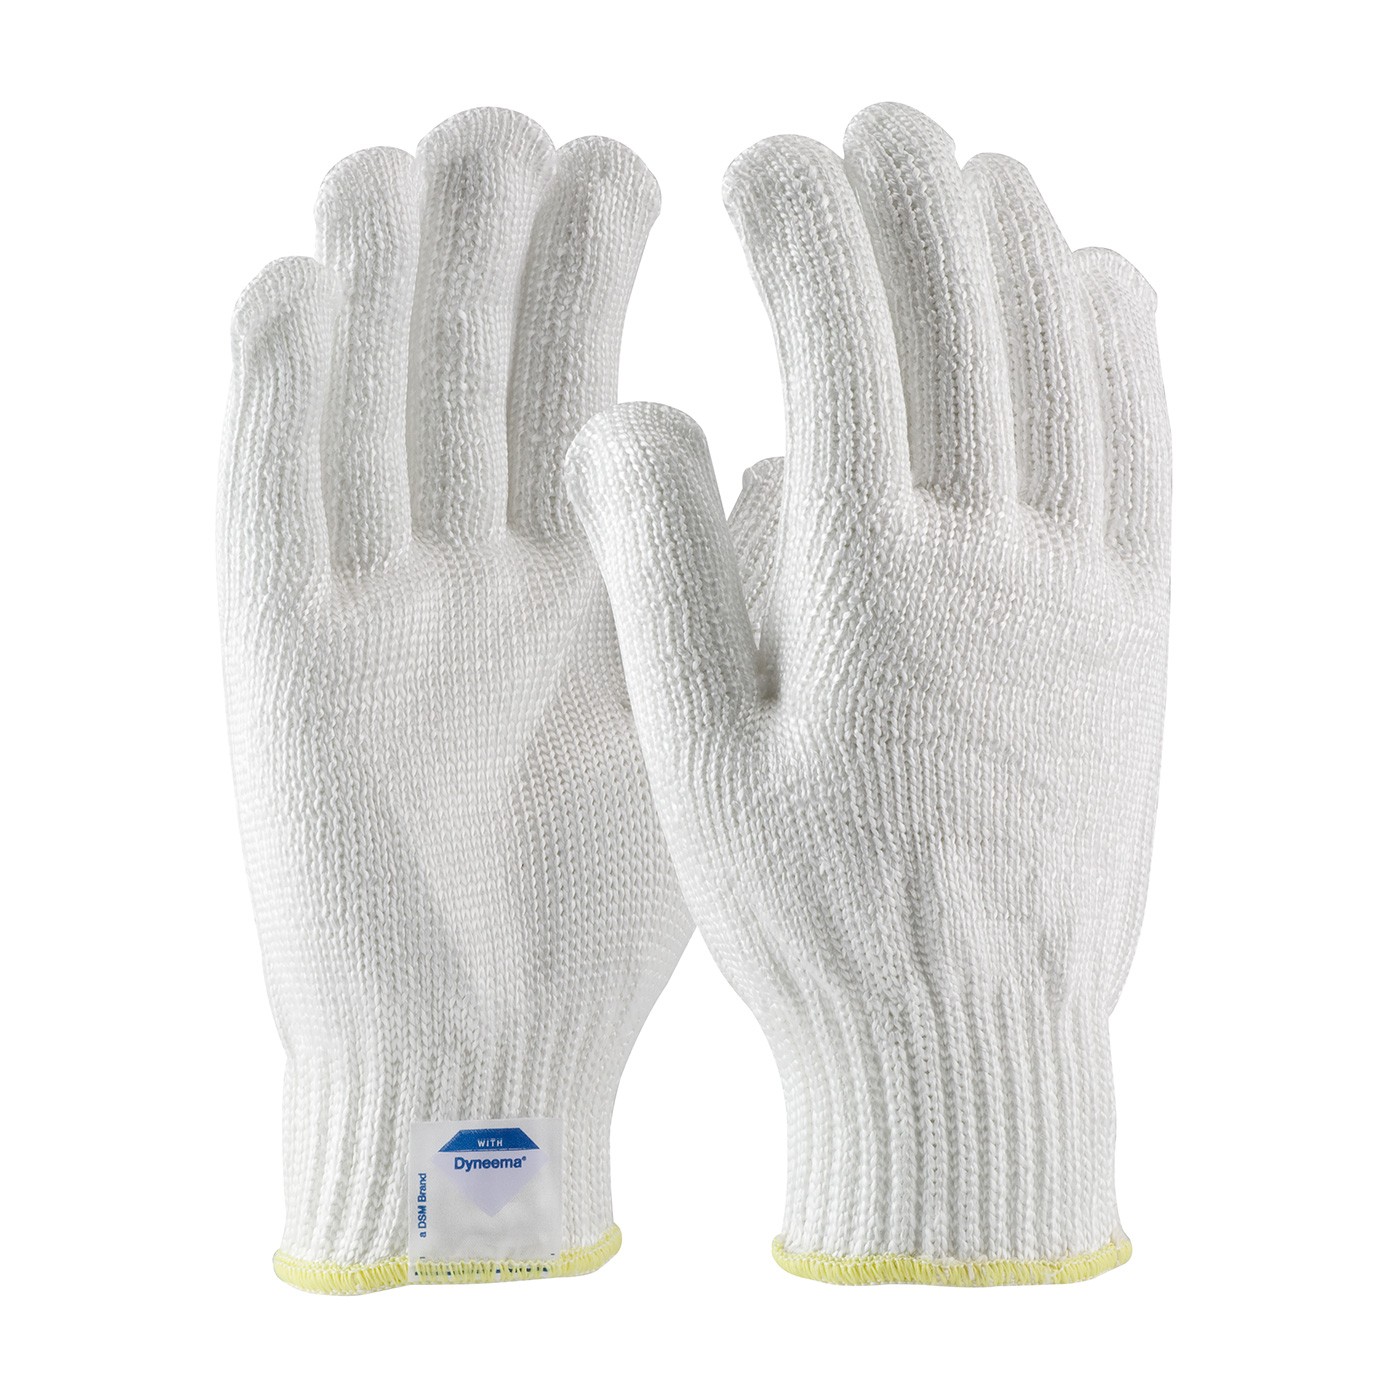 Kut Gard® Seamless Knit Dyneema® Glove - Medium Weight  (#17-D300)